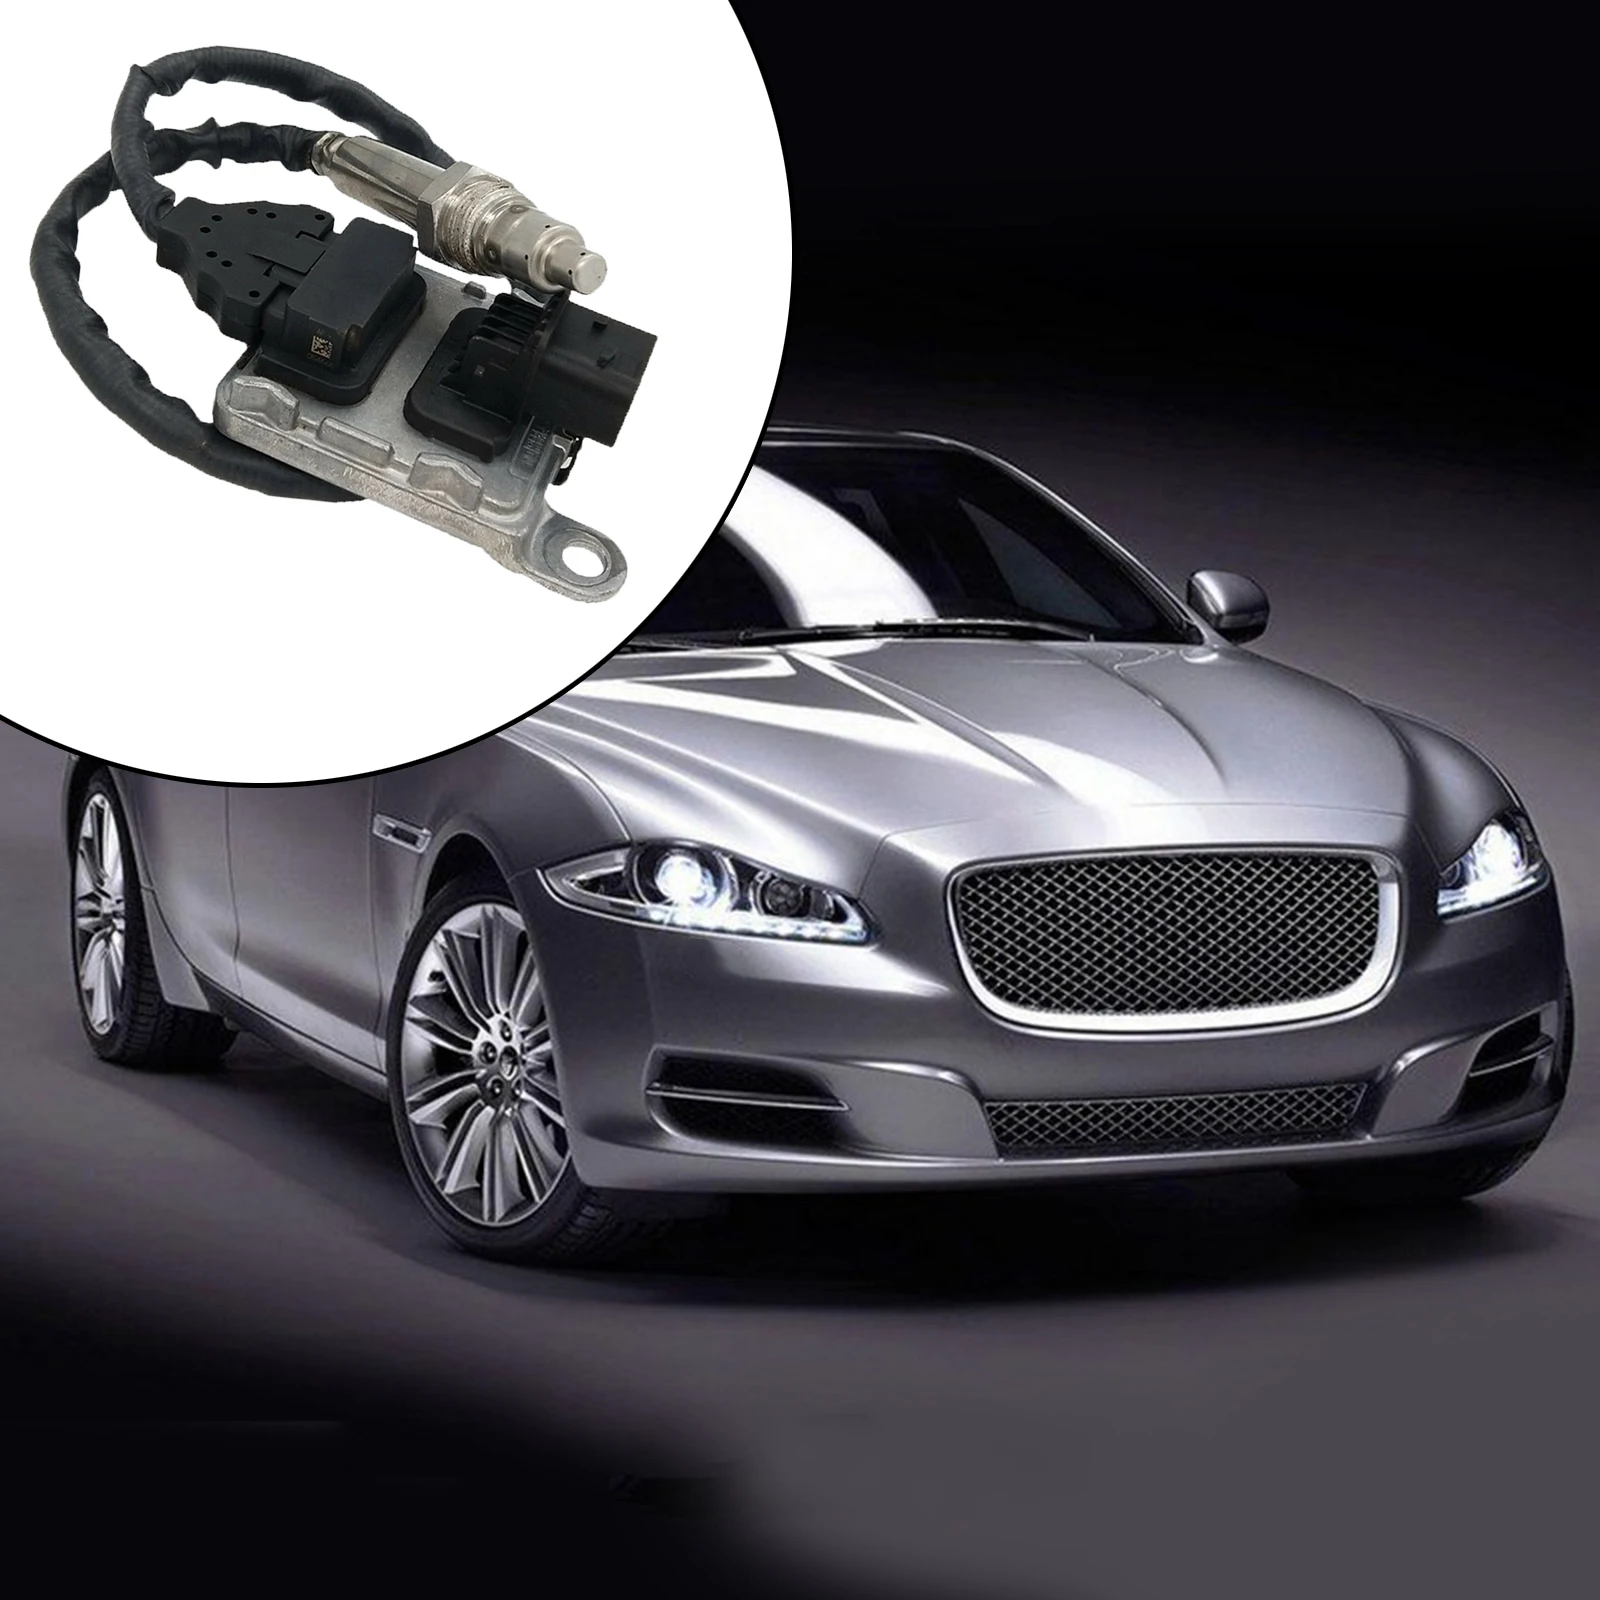 A0101531928 Nitrogen Oxide Sensor Nox Sensor Fits for Mercedes Detroit Motor Parts Car Accessories